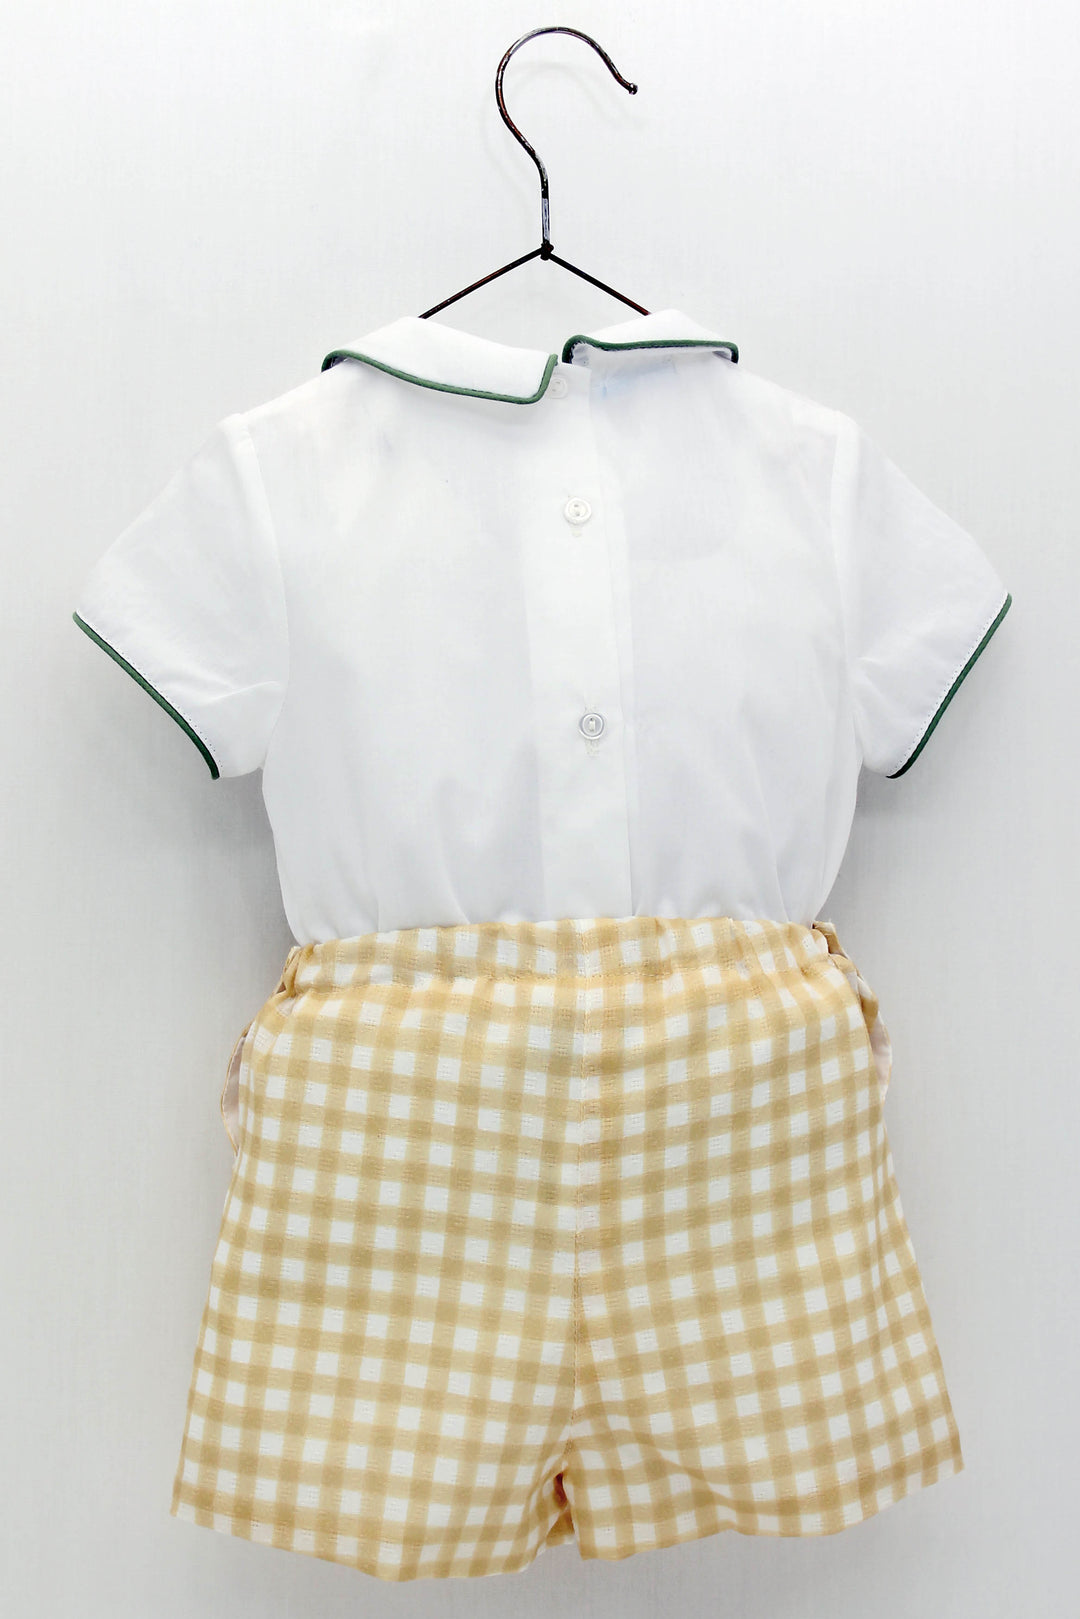 Foque "Christian" White Shirt & Lemon Gingham Shorts | Millie and John